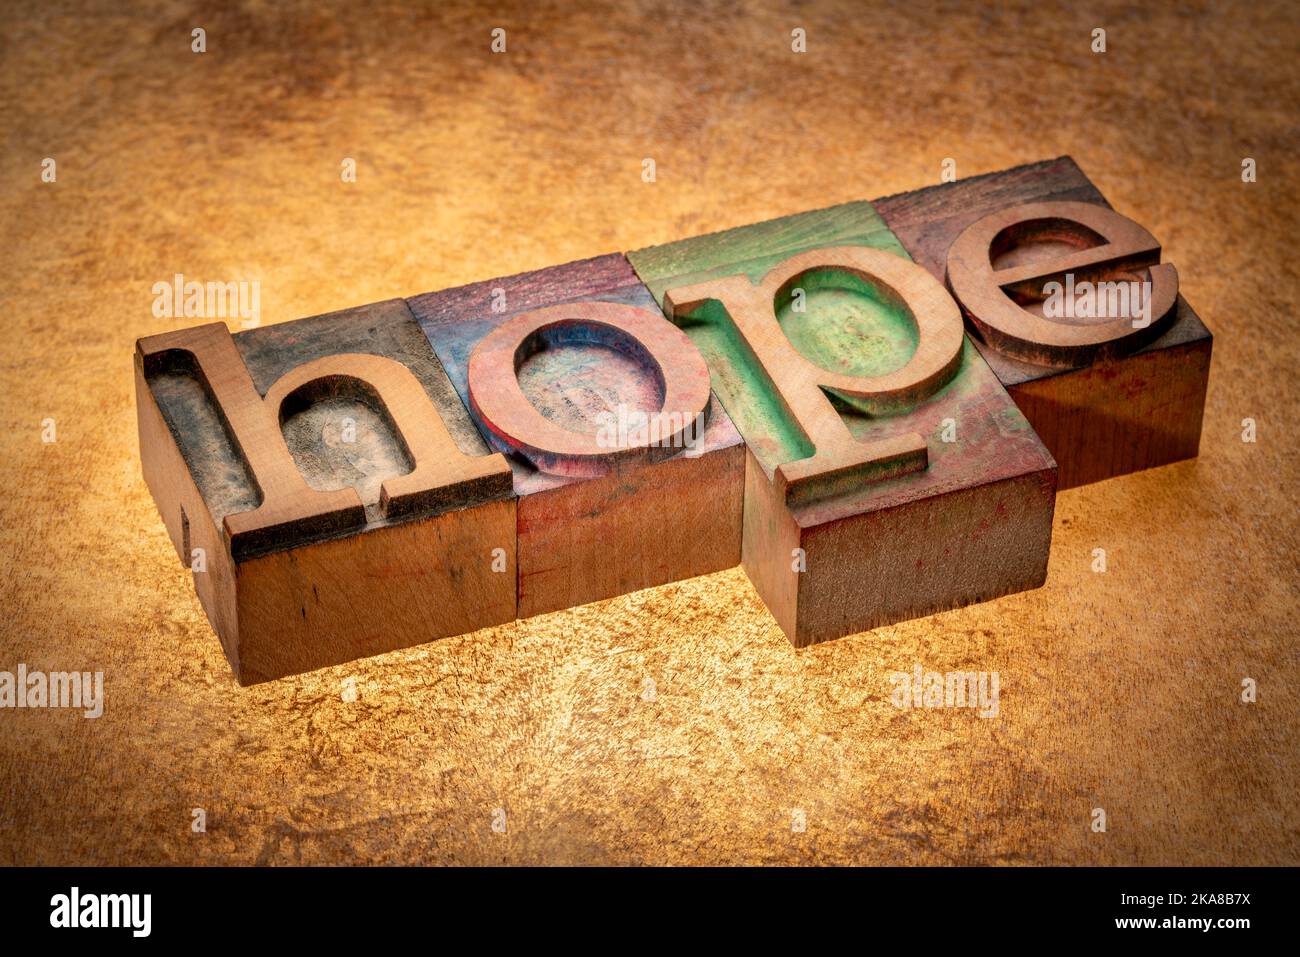 parola di speranza - testo in legno di tipo letterpress vintage su sfondo retroilluminato, concetto di ottimismo Foto Stock